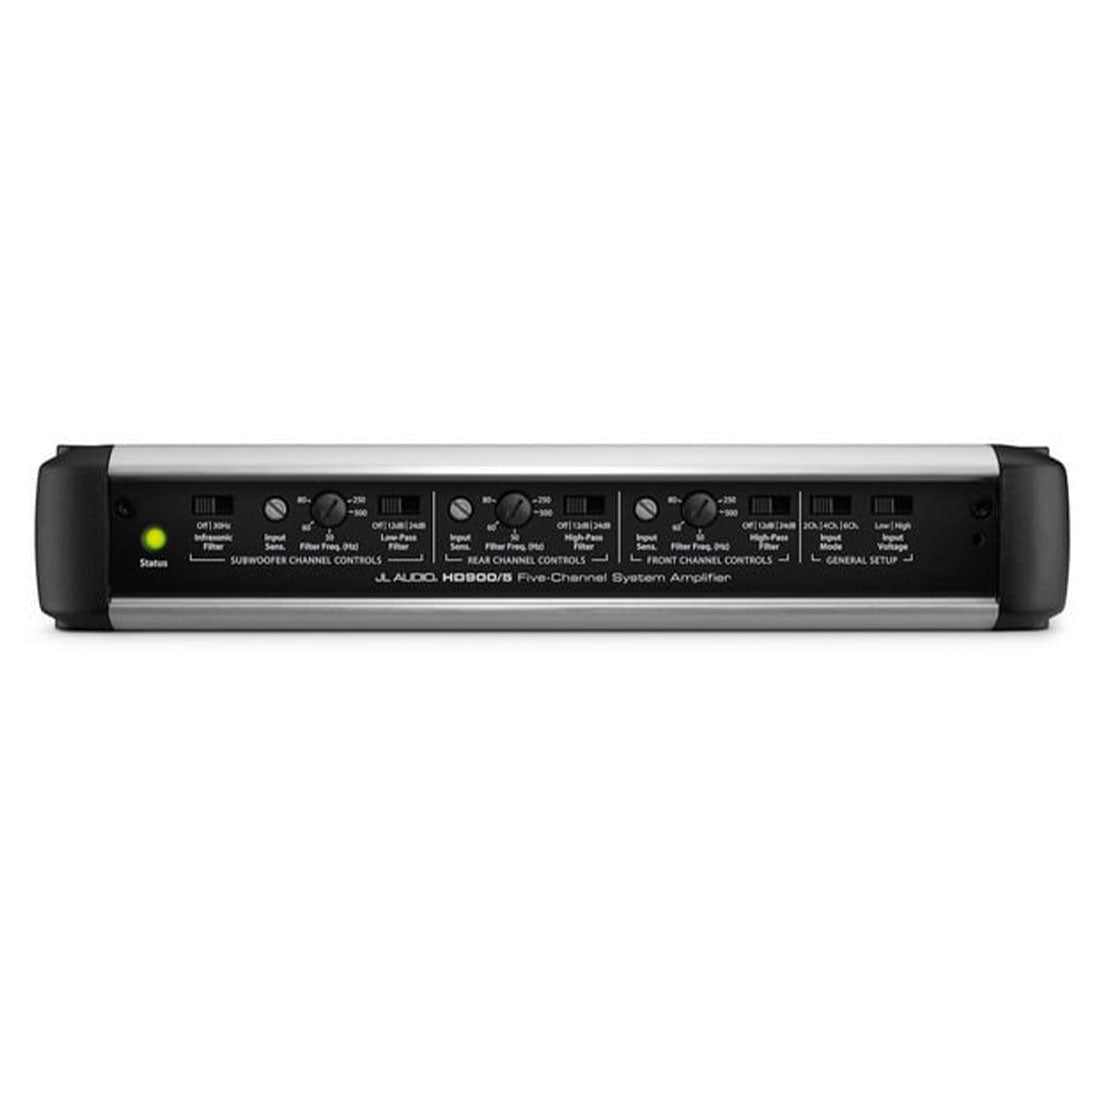 JL Audio HD900/5 5 Ch. 900 Watt 4 Ohm System Amplifier – #98223